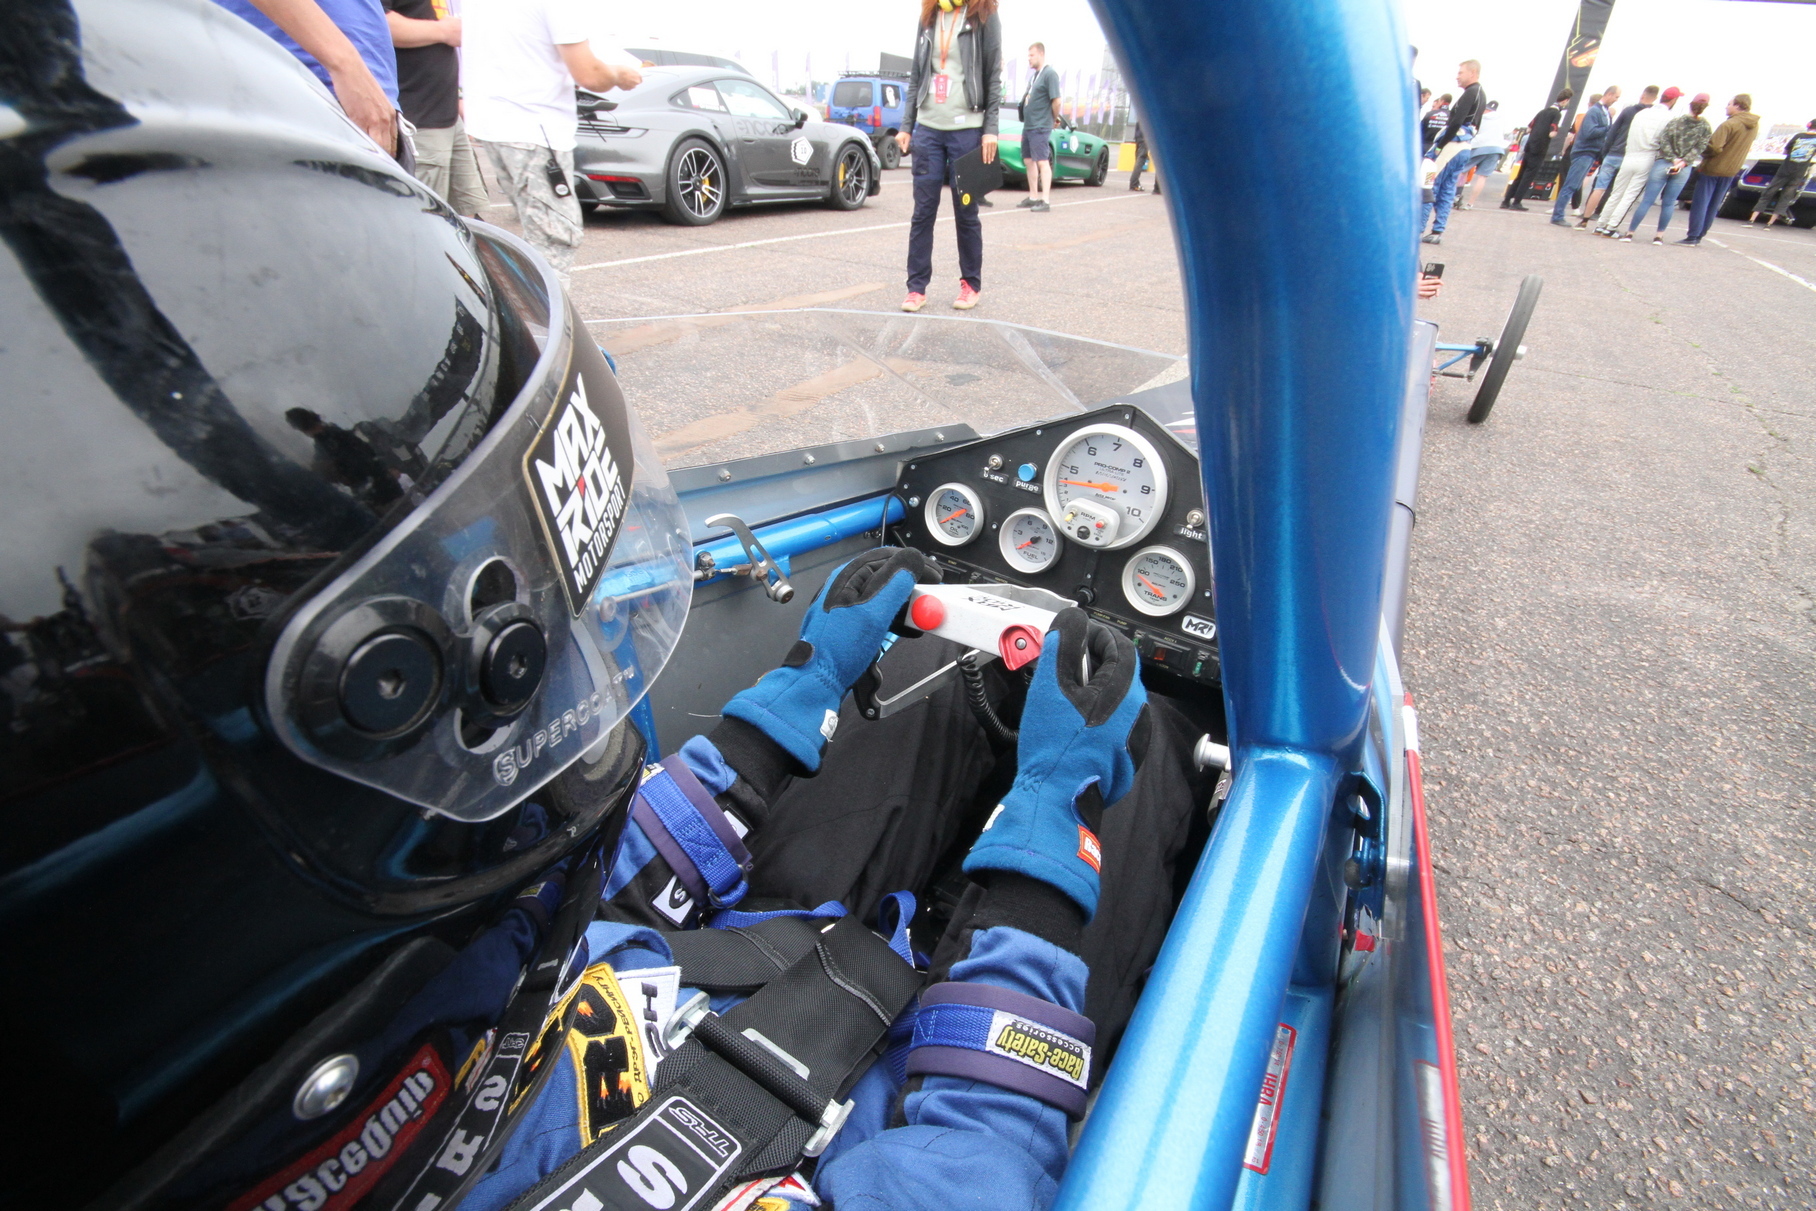 Вот так видит окружающую действительнось из кокпита своего дрэгстера шеф новосибирской команды MaxRide Motorsport Максим Кривобоков. Руль — традиционная для таких машин «бабочка».